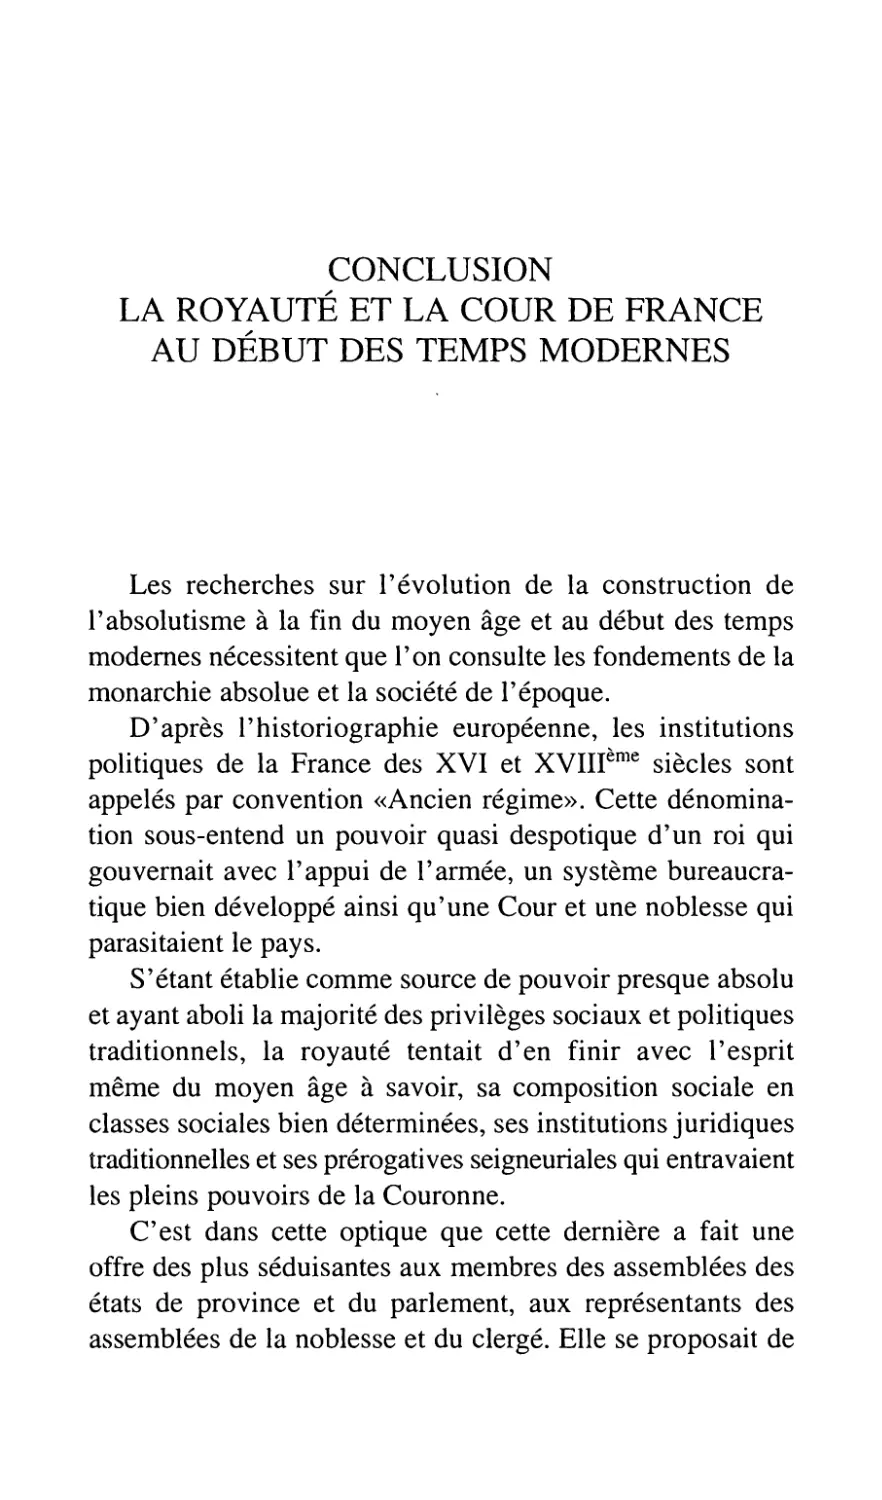 Conclusion. La royauté et la Cour de France au début des temps modernes